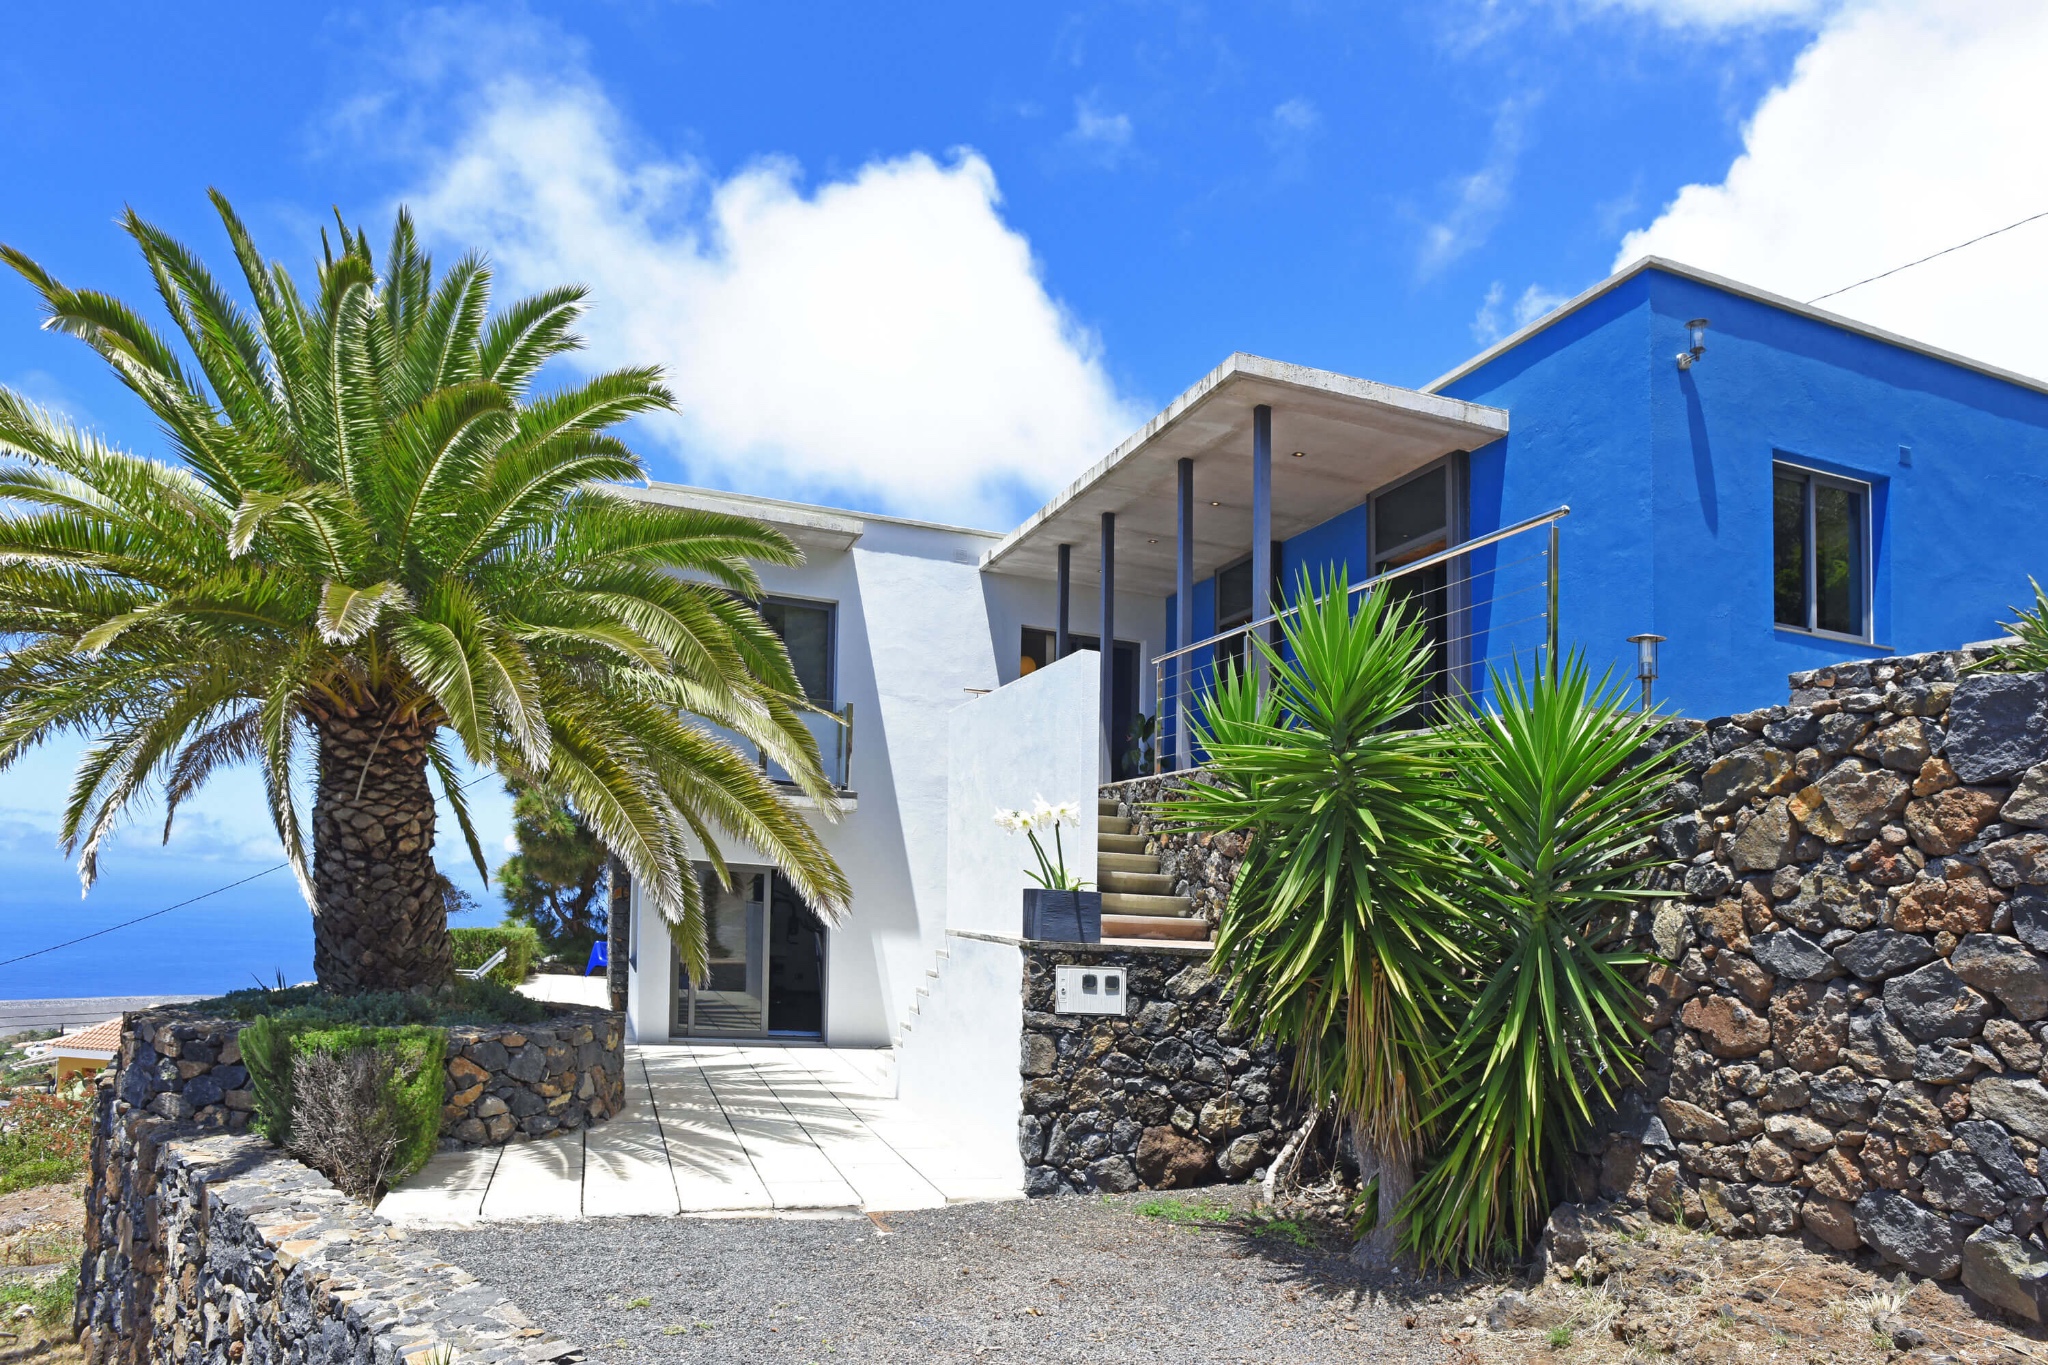 Modernes Ferienhaus für 4 Personen in der schönen Gegend von Tijarafe mit herrlichem Blick auf Meer und Landschaft